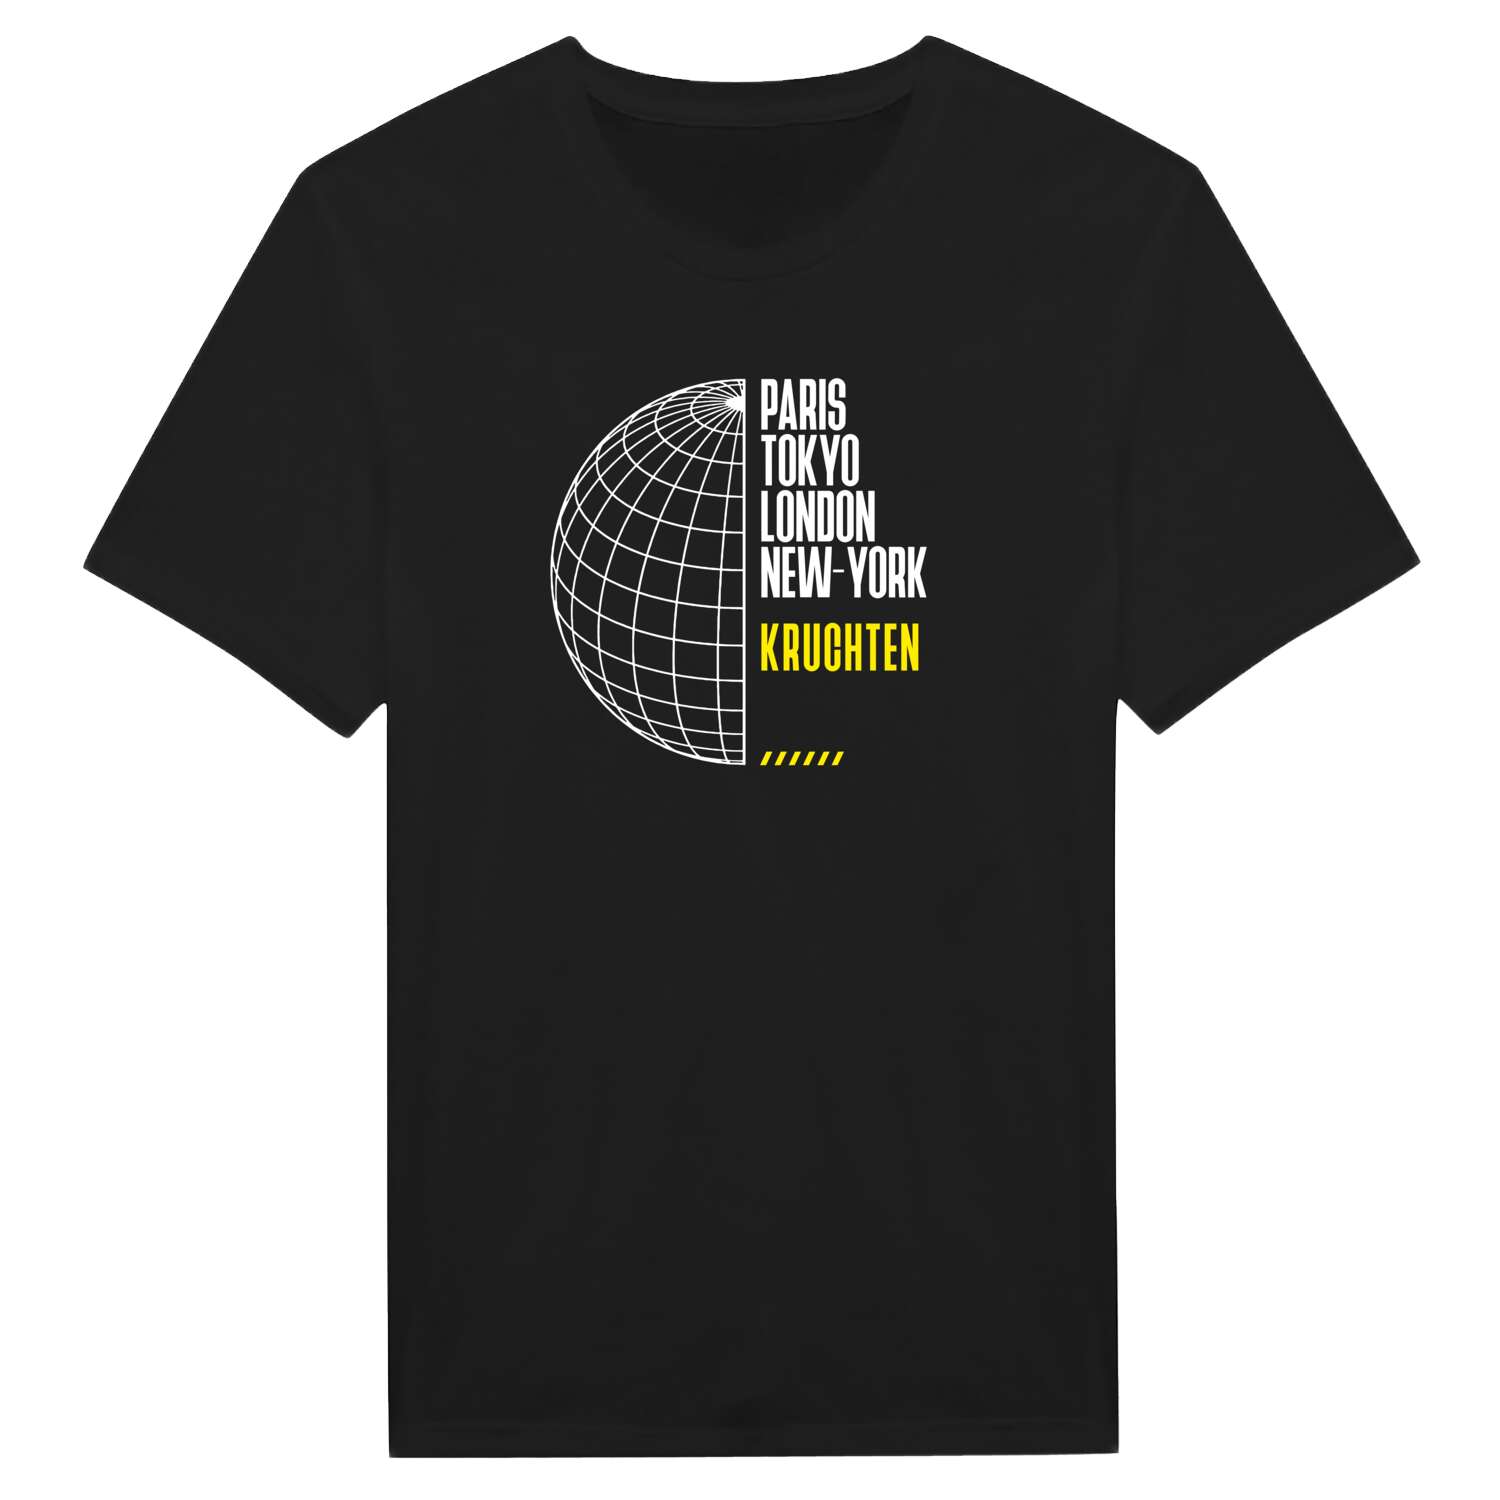 Kruchten T-Shirt »Paris Tokyo London«